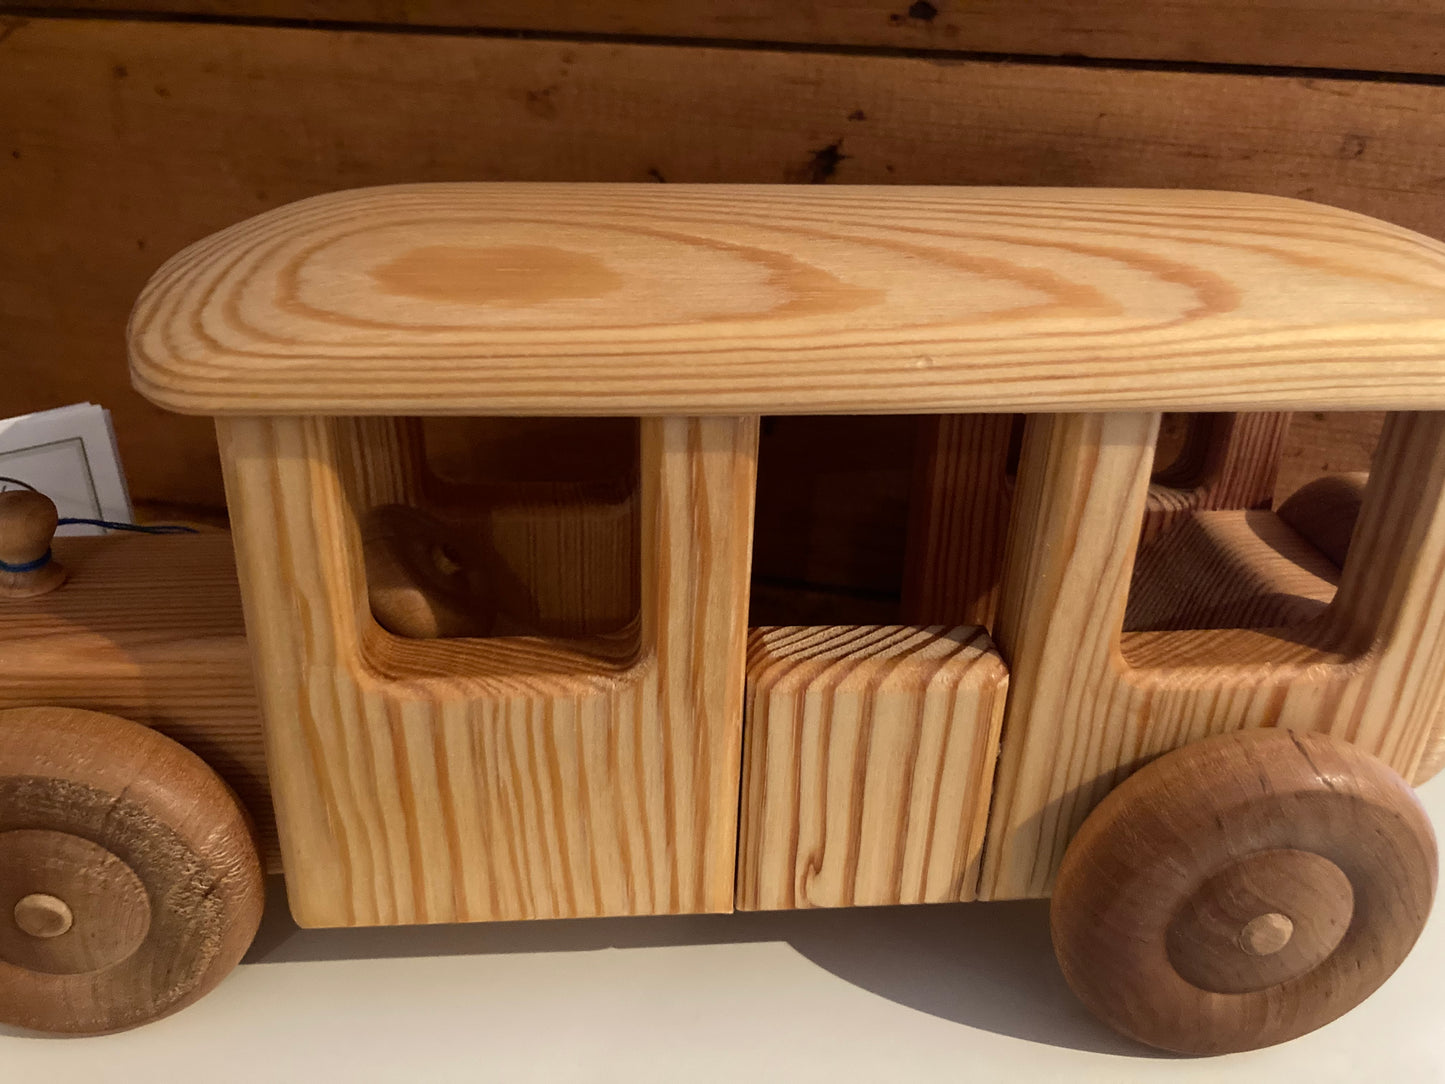 Wooden Toy - Debresk BIG BUS